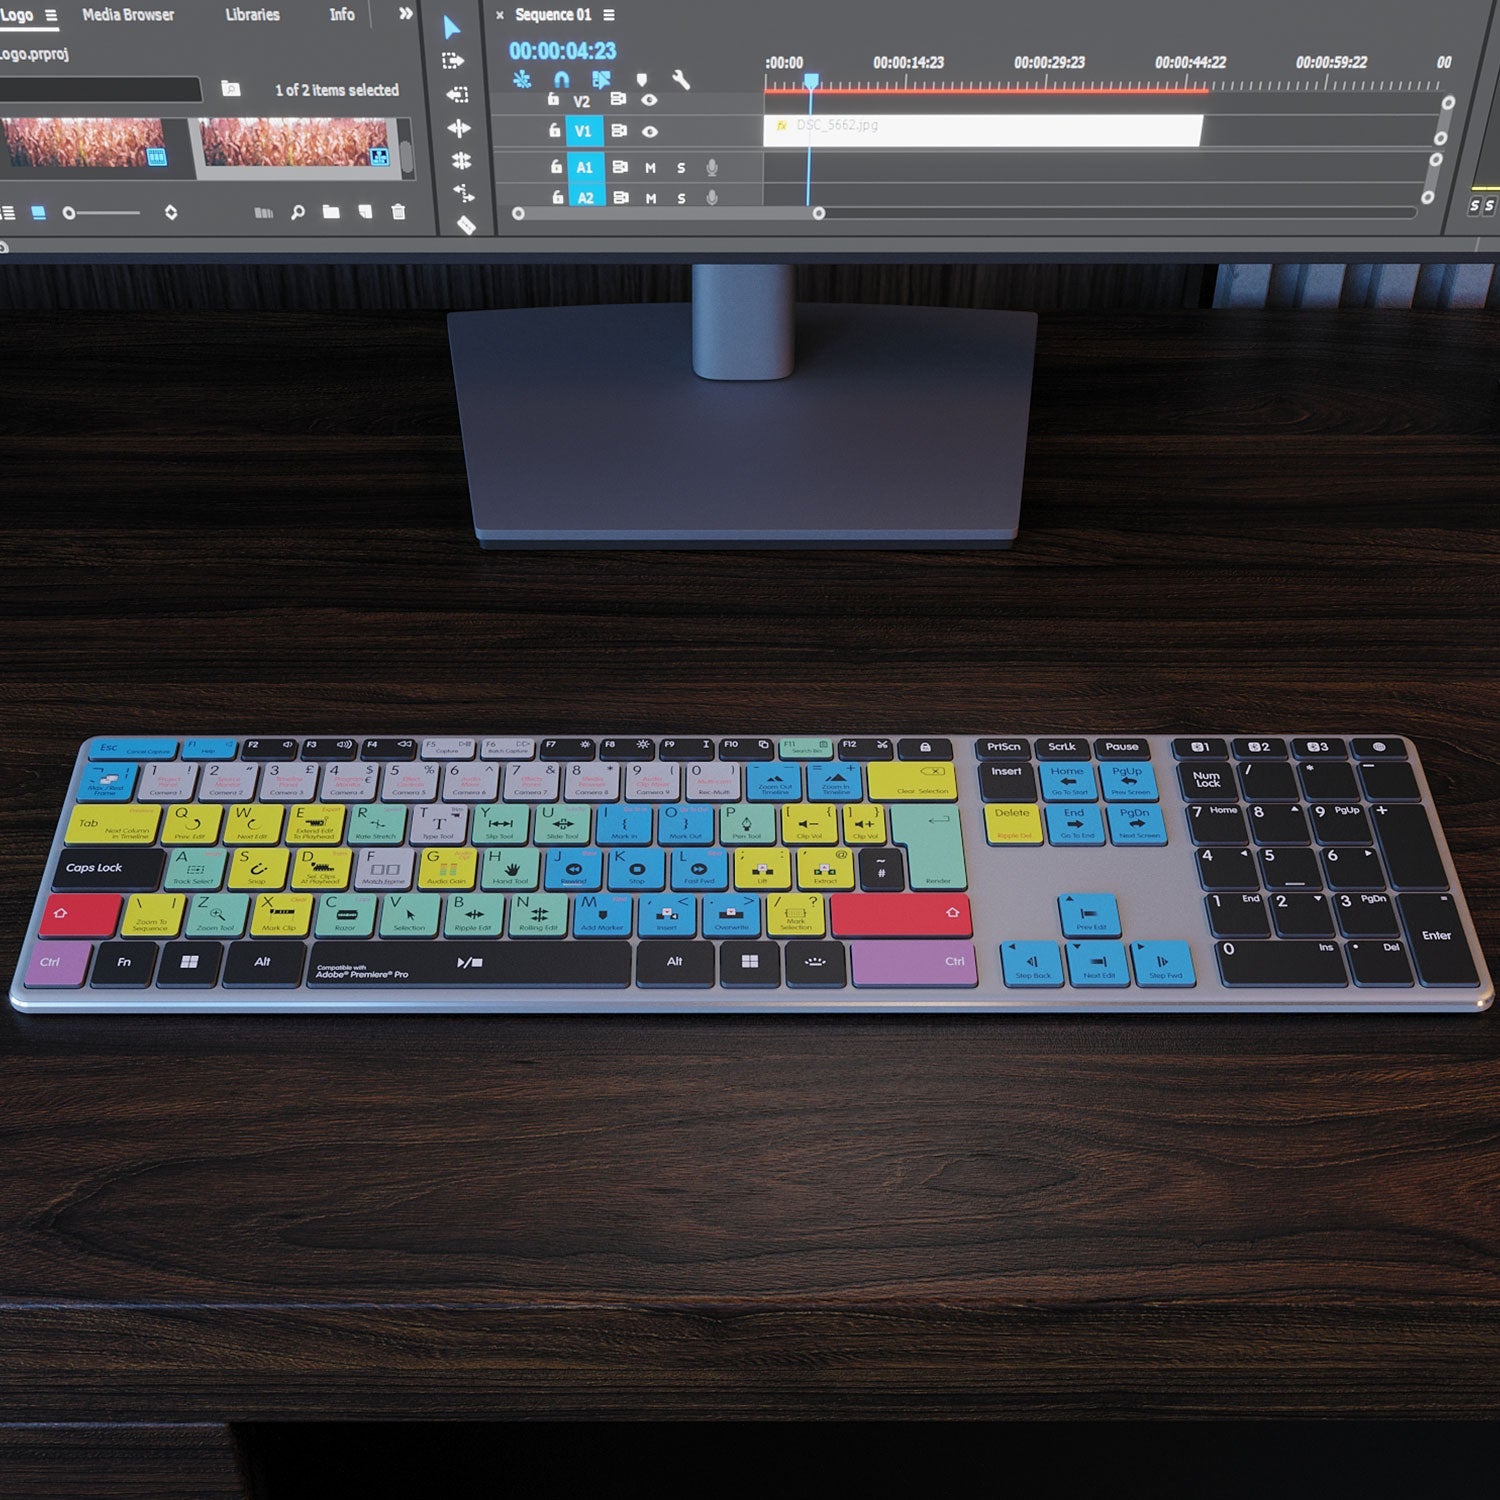 NEW Adobe Premiere Keyboard | Wireless | Mac or PC - Editors Keys